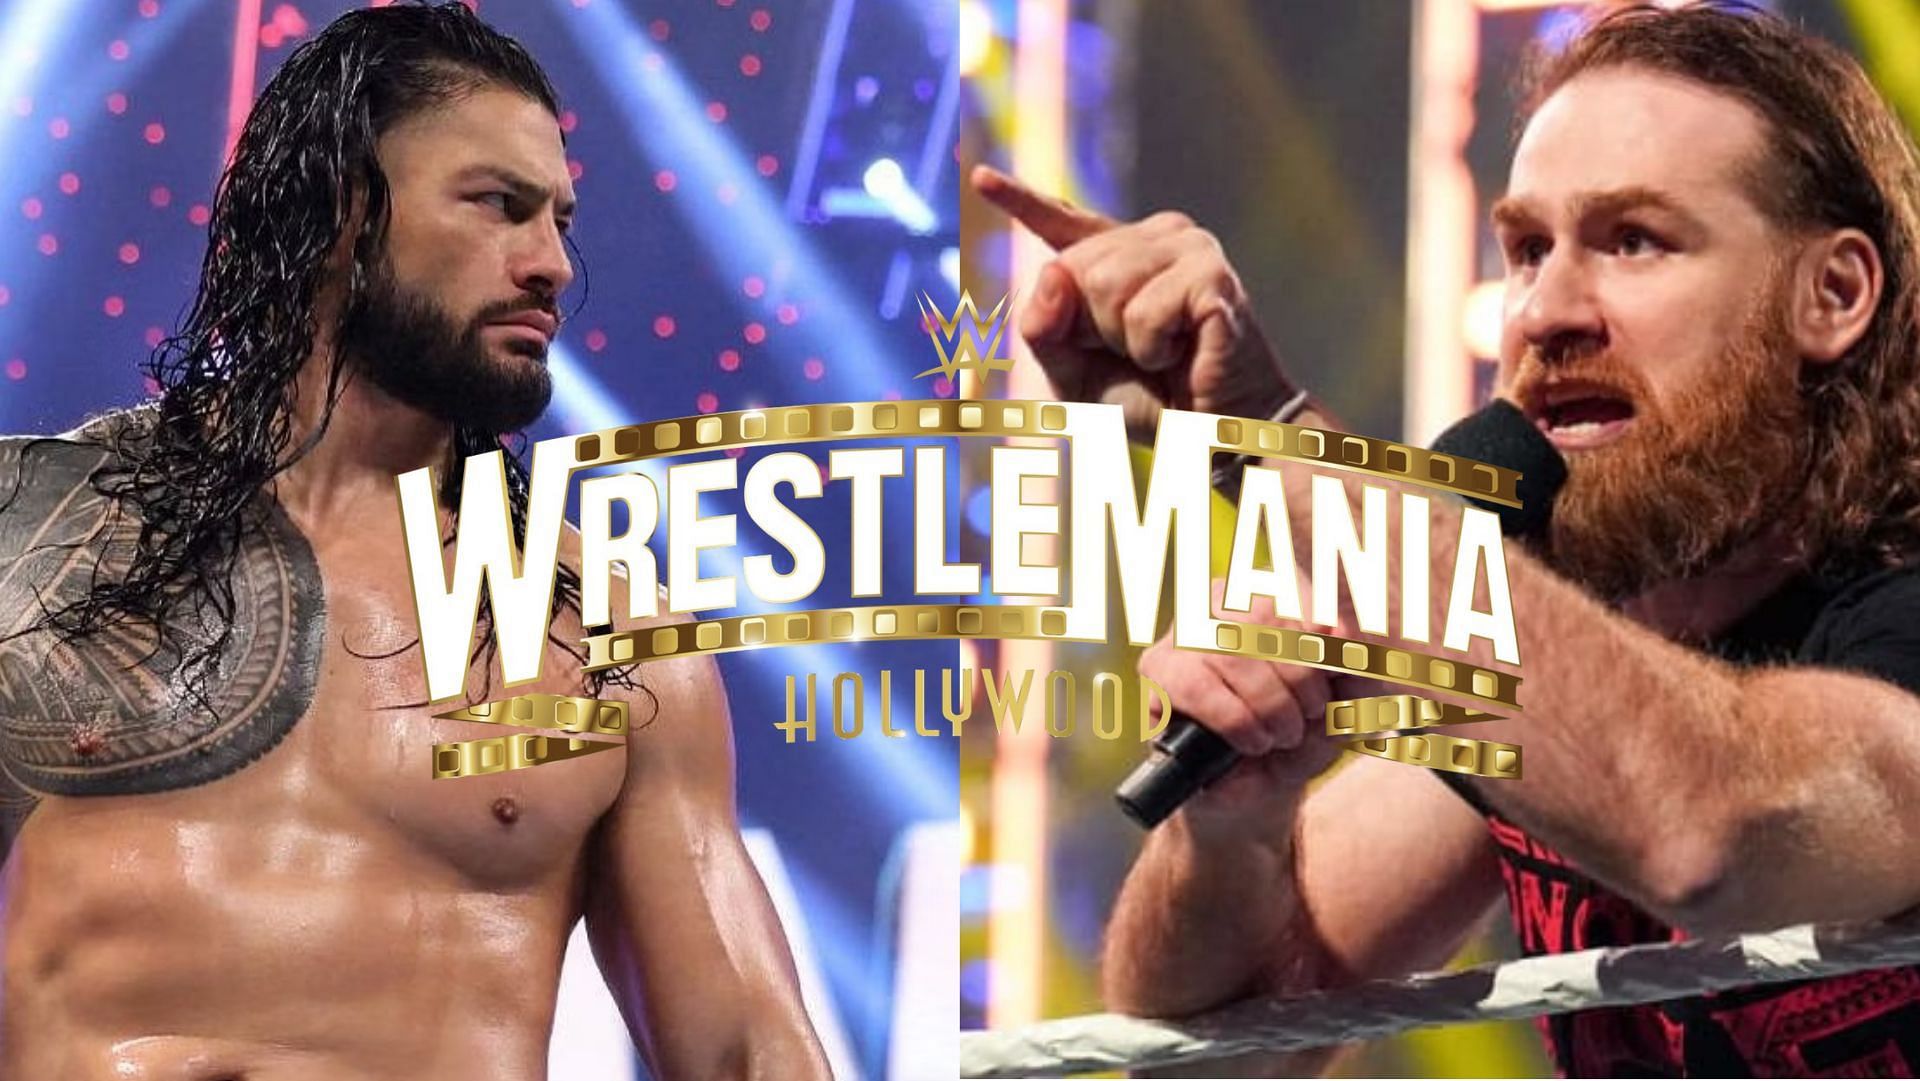 WWE Superstars Roman Reigns and Sami Zayn